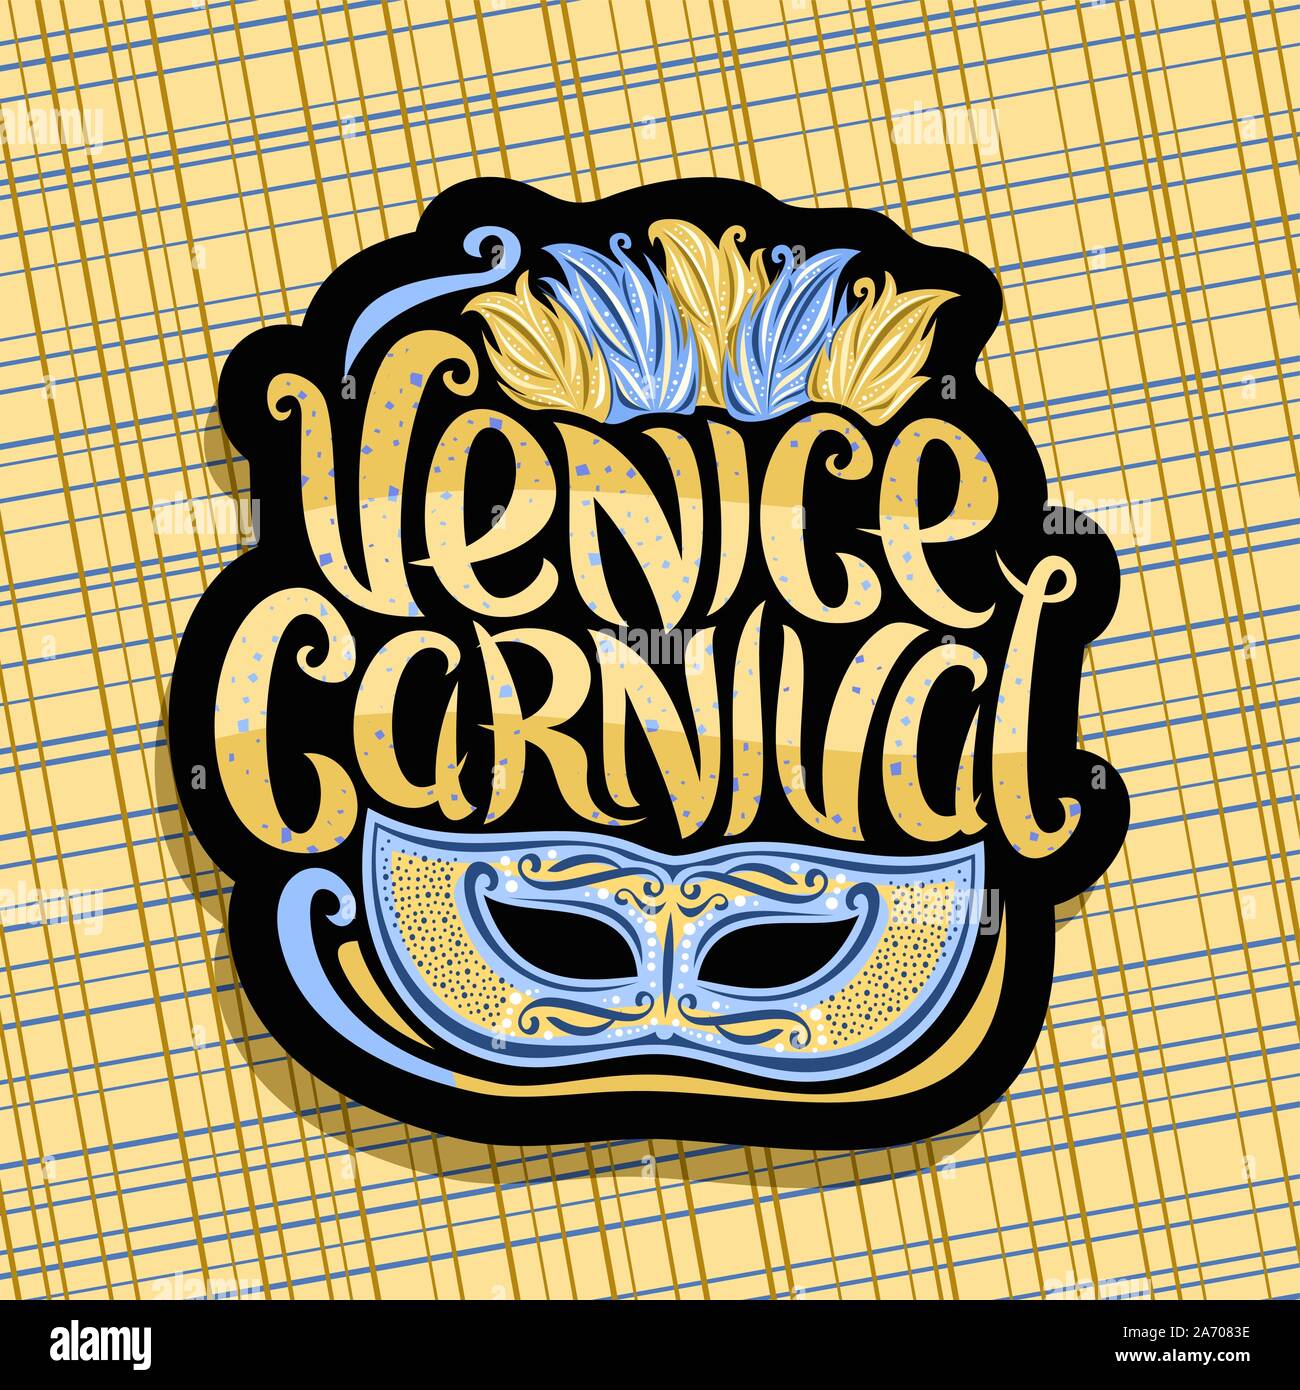 Logo Vector pour Carnaval de Venise, panneau noir avec illustration de bleu masquerade mask, plumes colorées pour coiffure, police manuscrite élégante f Illustration de Vecteur